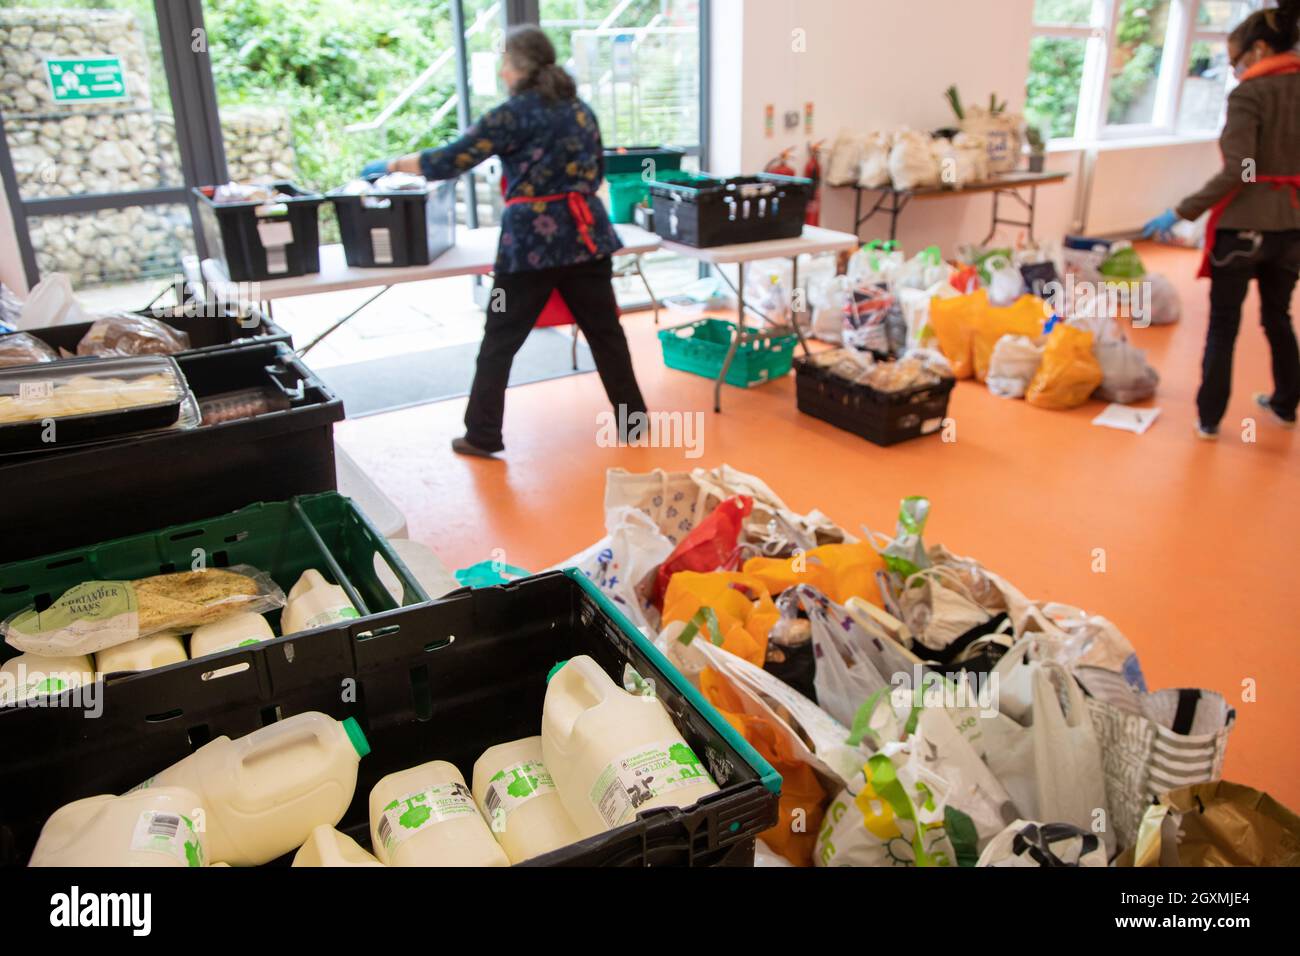 Deux femmes bénévoles dans une banque alimentaire triant des caisses de nourriture en préparation pour la distribution aux membres de la communauté locale dans le besoin. Robot de lait Banque D'Images